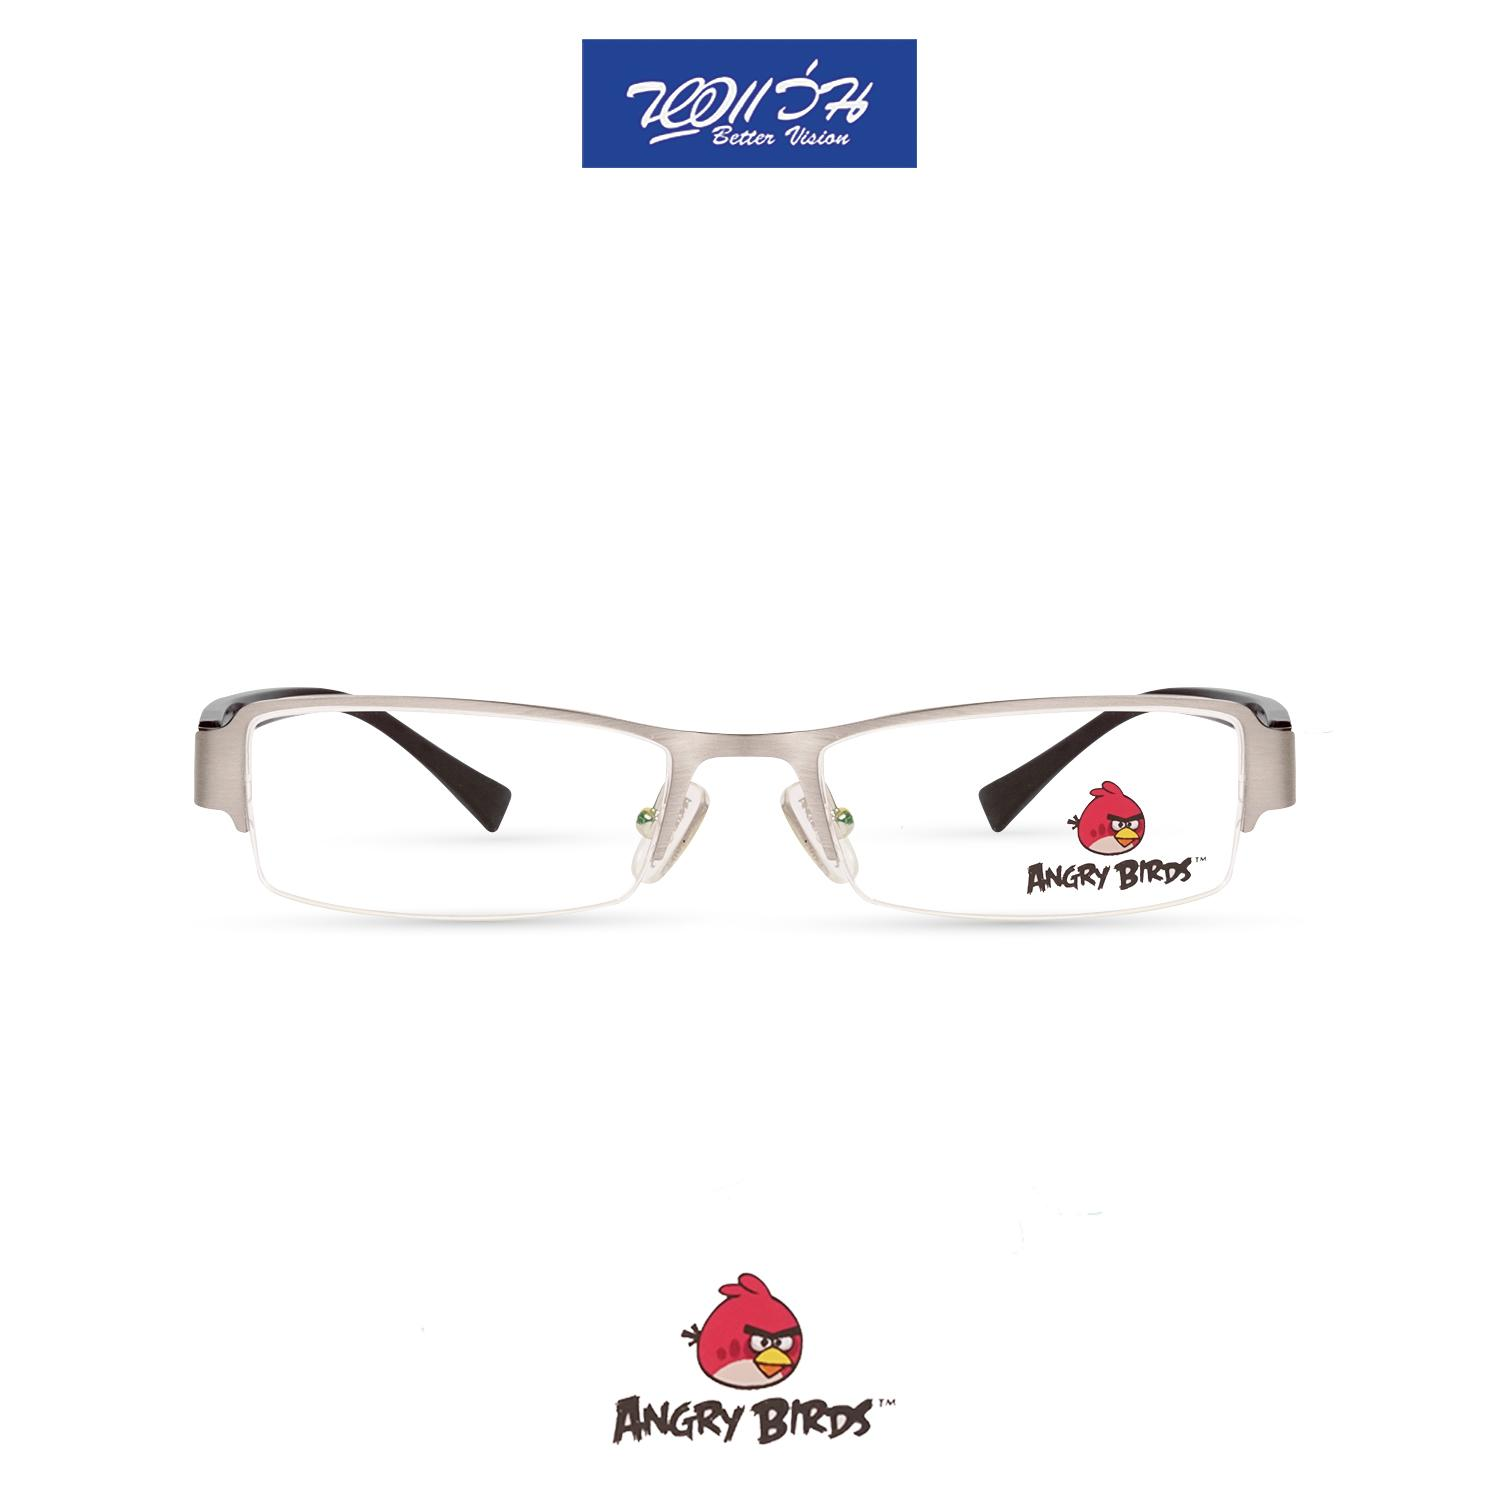 กรอบแว่นตาเด็ก แองกี้ เบิร์ด ANGRY BIRDS Child glasses แถมฟรีส่วนลดค่าตัดเลนส์ 25%  free 25% lens discount รุ่น FAG22108